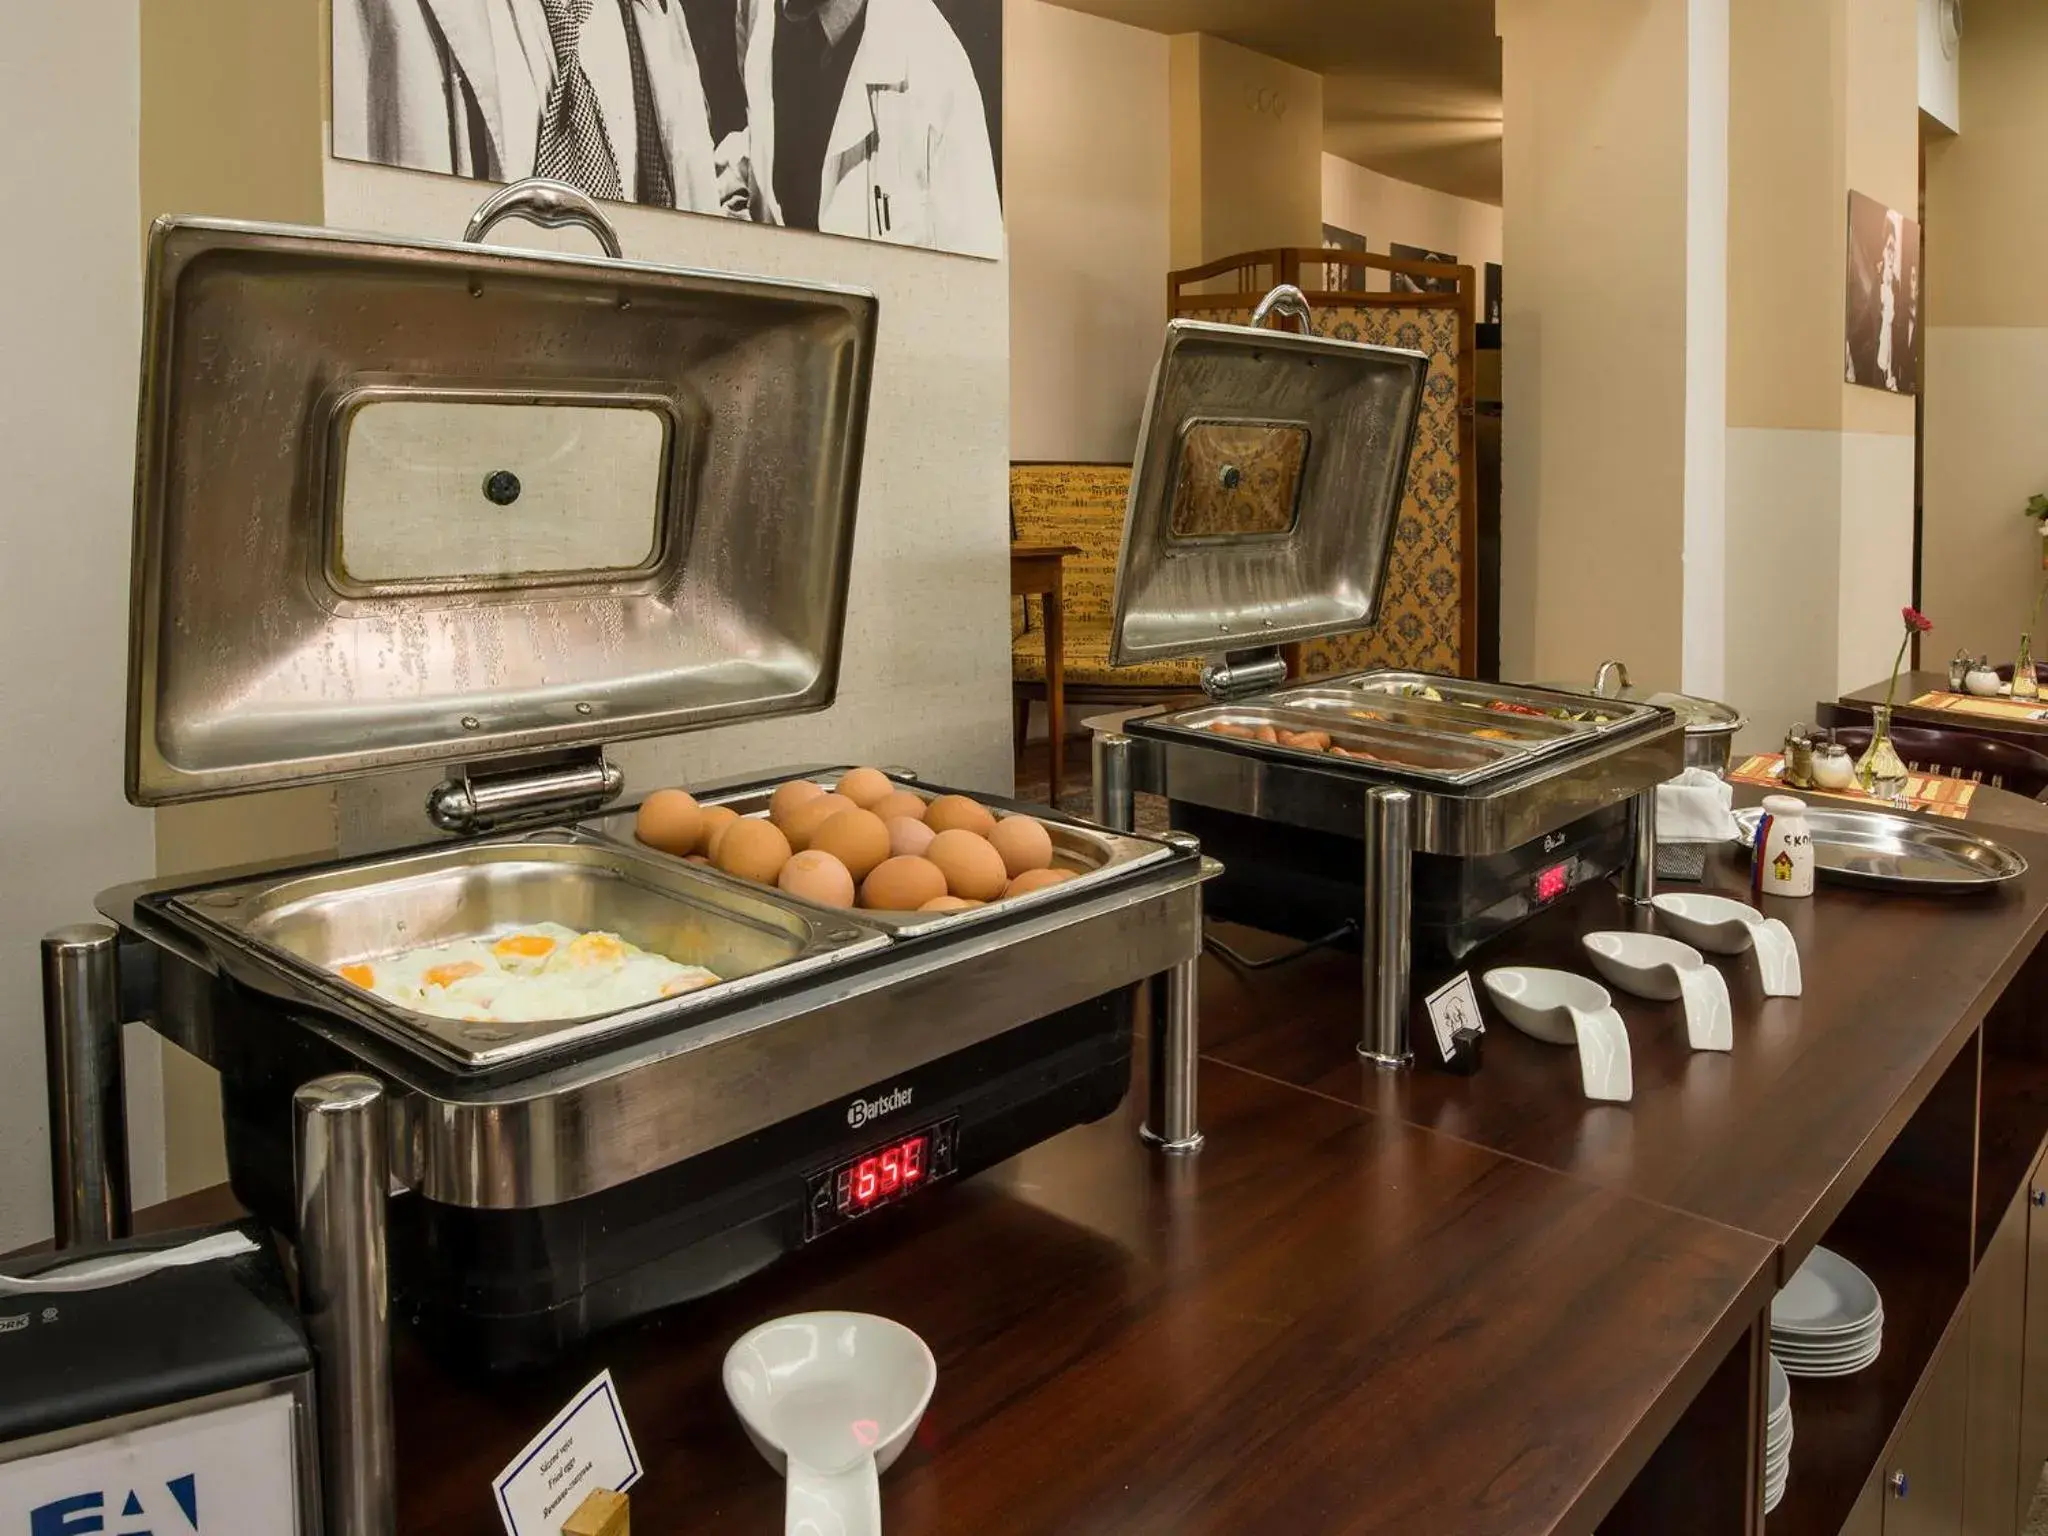 Buffet breakfast in EA Hotel Rokoko